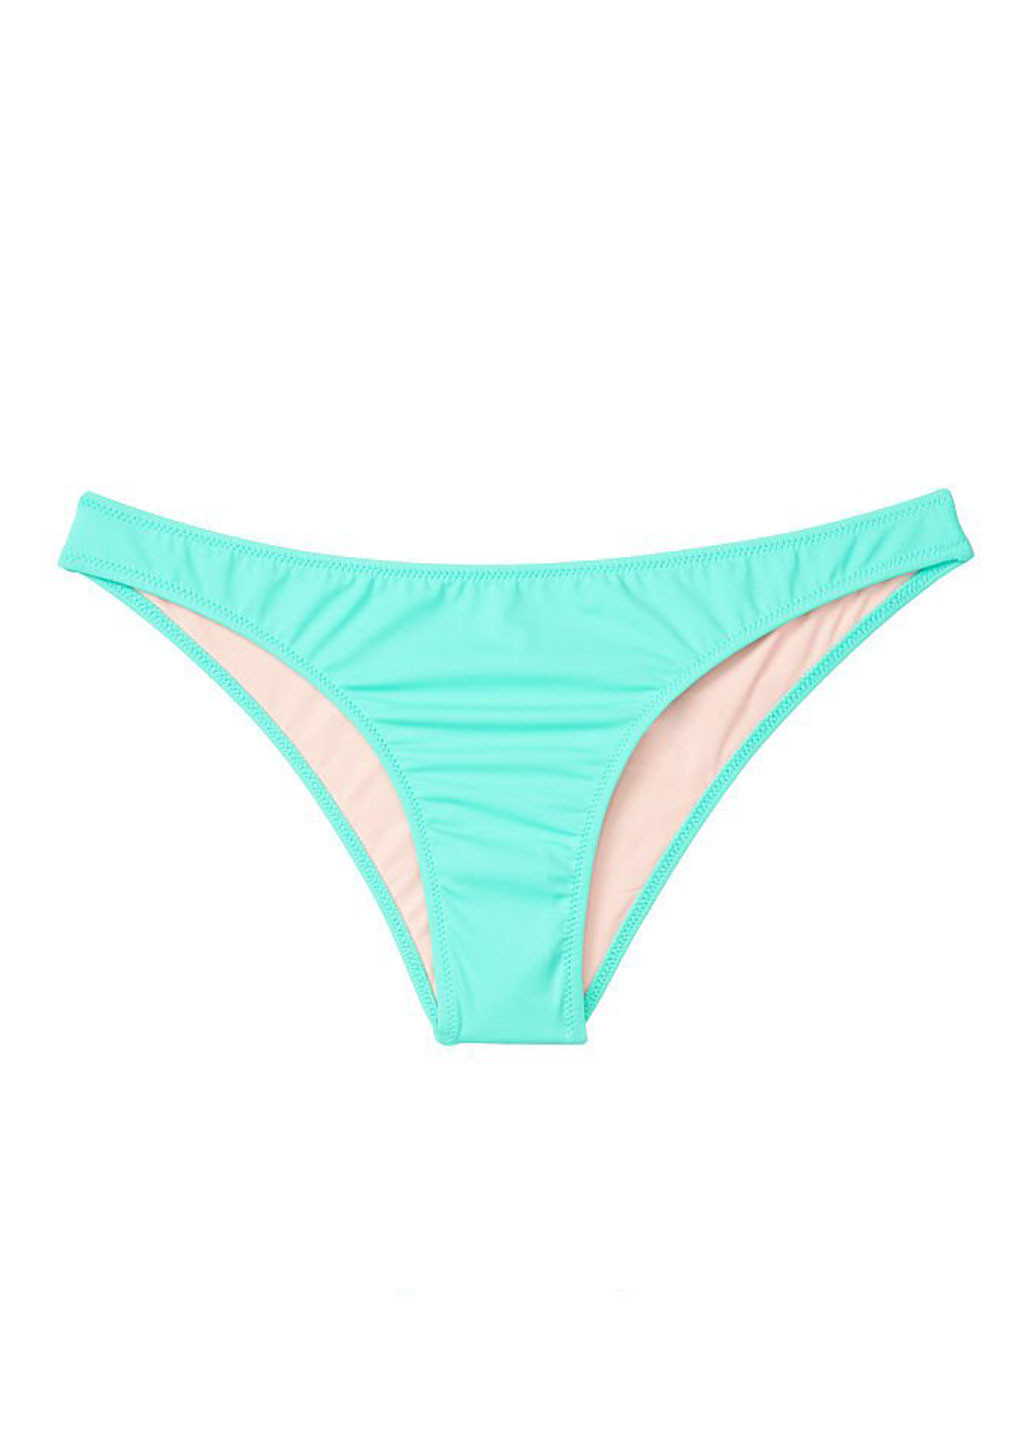 Мятный летний купальник (лиф, трусы) бикини, раздельный Victoria's Secret